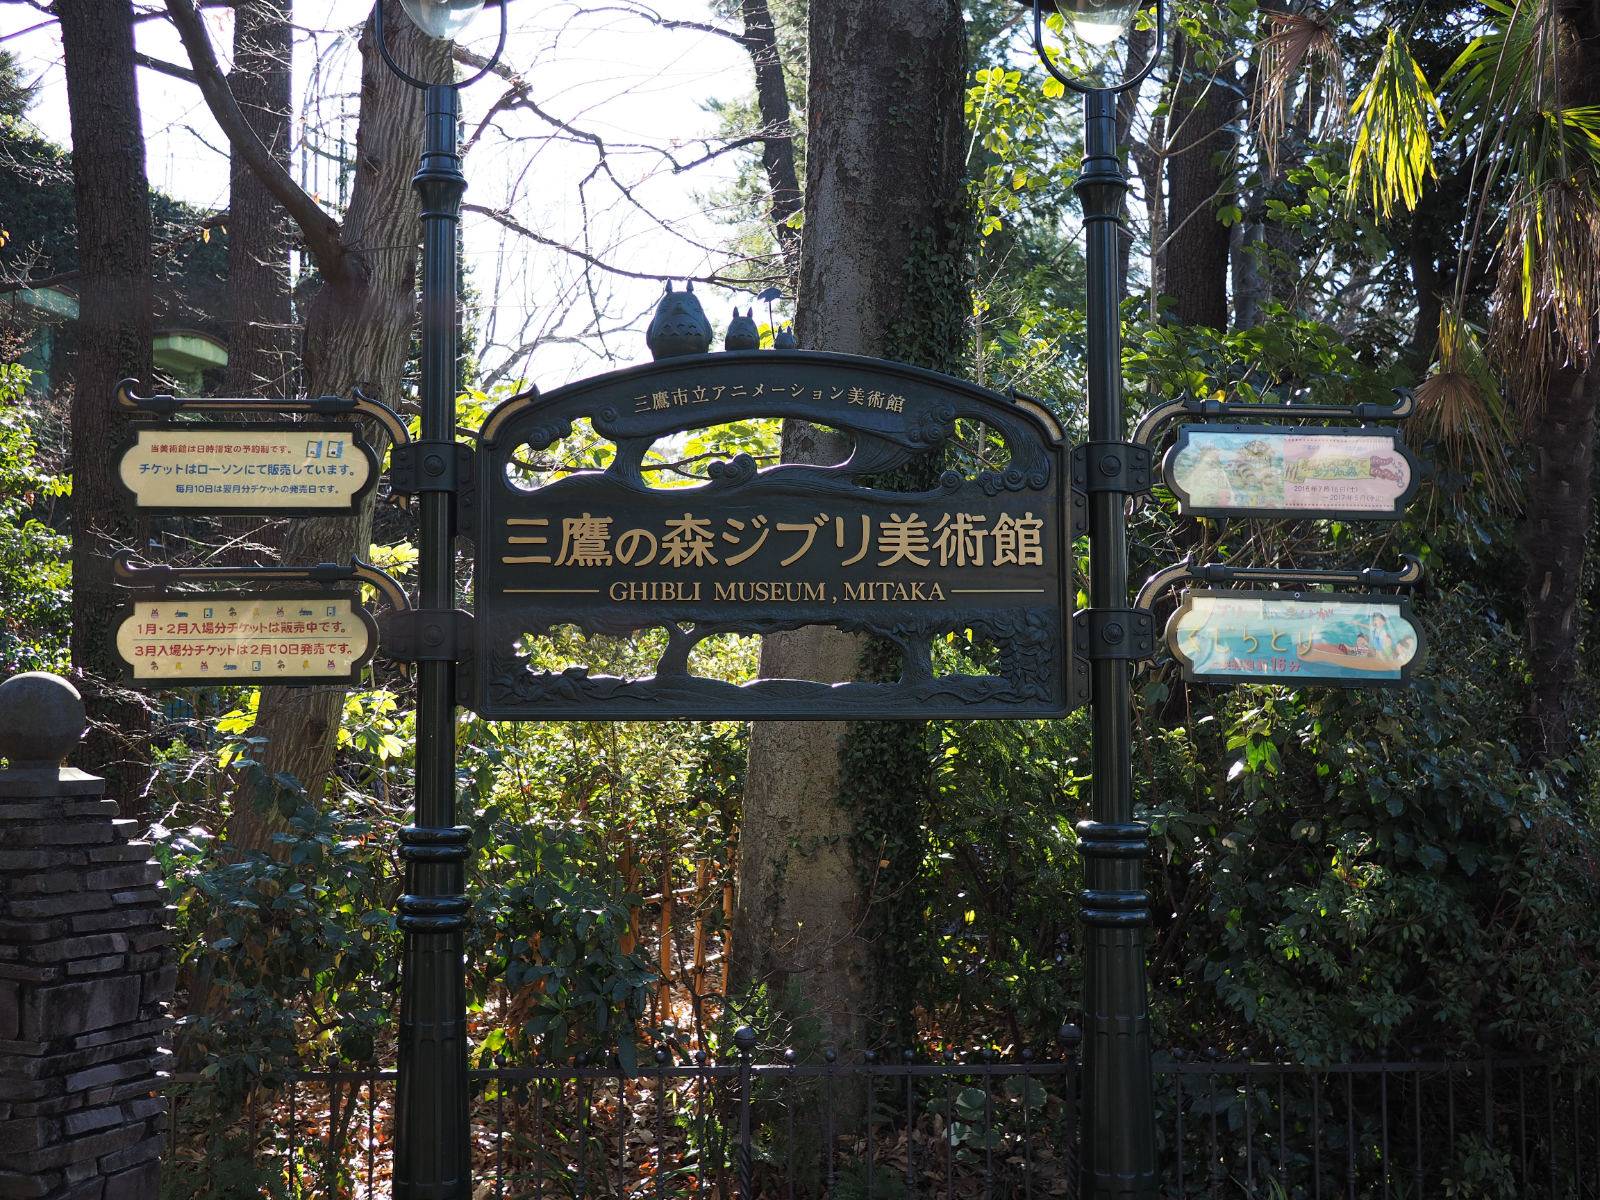 Ghibli museum sign